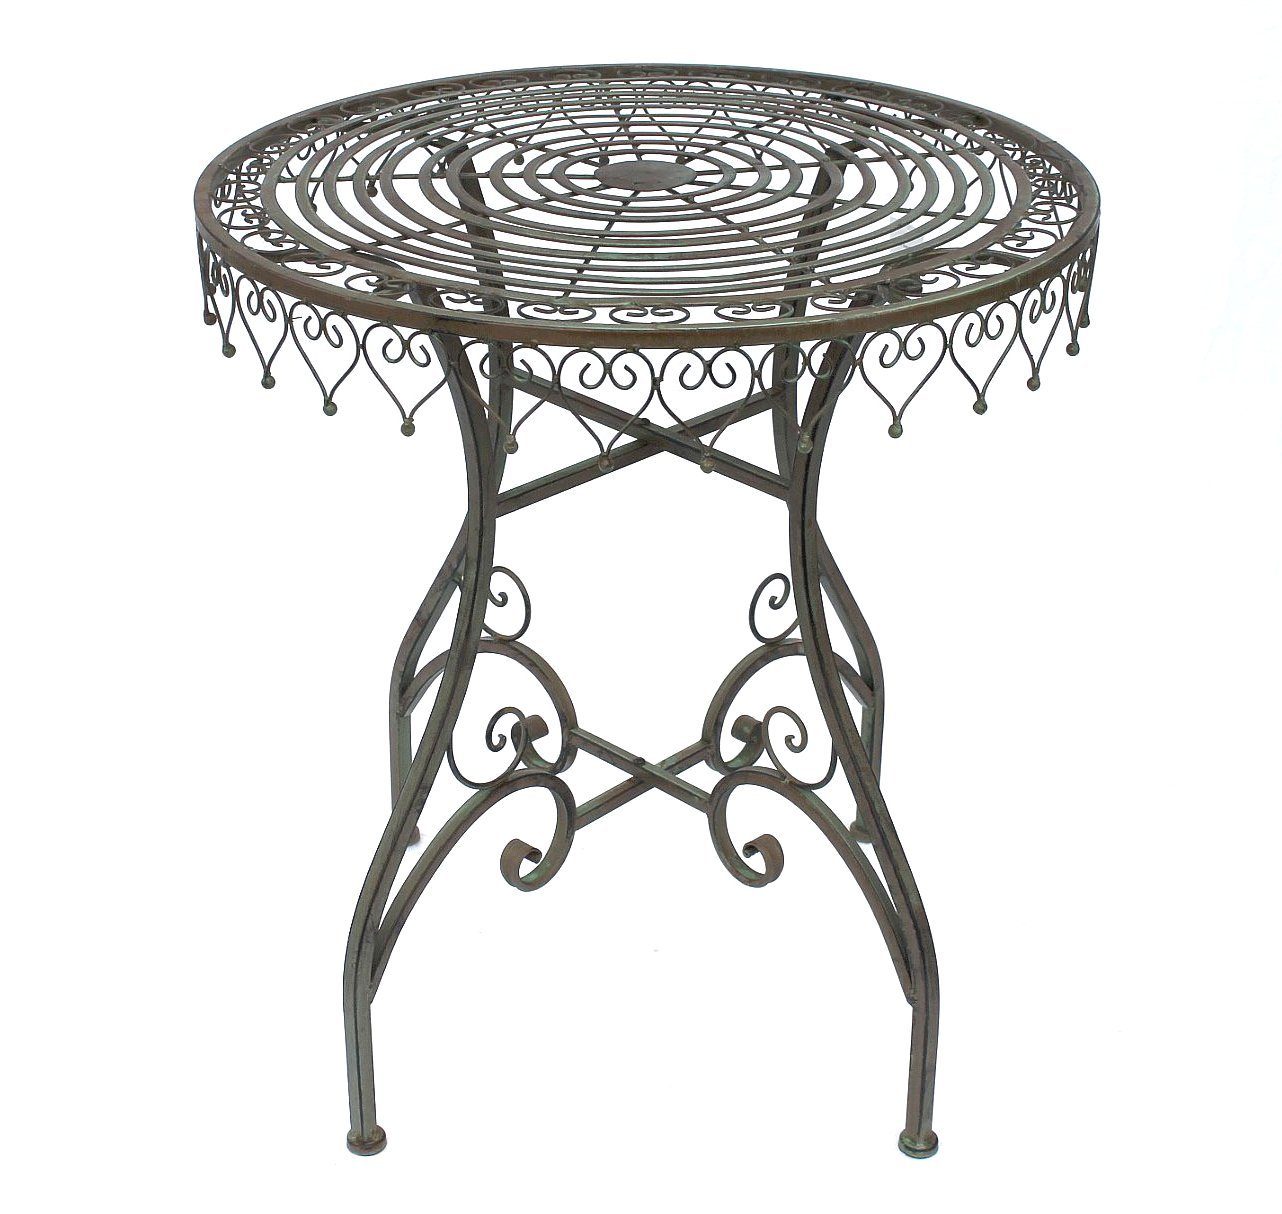 12184 Bistrotisch DanDiBo Gartentisch Tisch Metall Balkontisch Malega Klapptisch Eisentisch Antik Vintage Gartentisch DanDiBo Rund Bistro